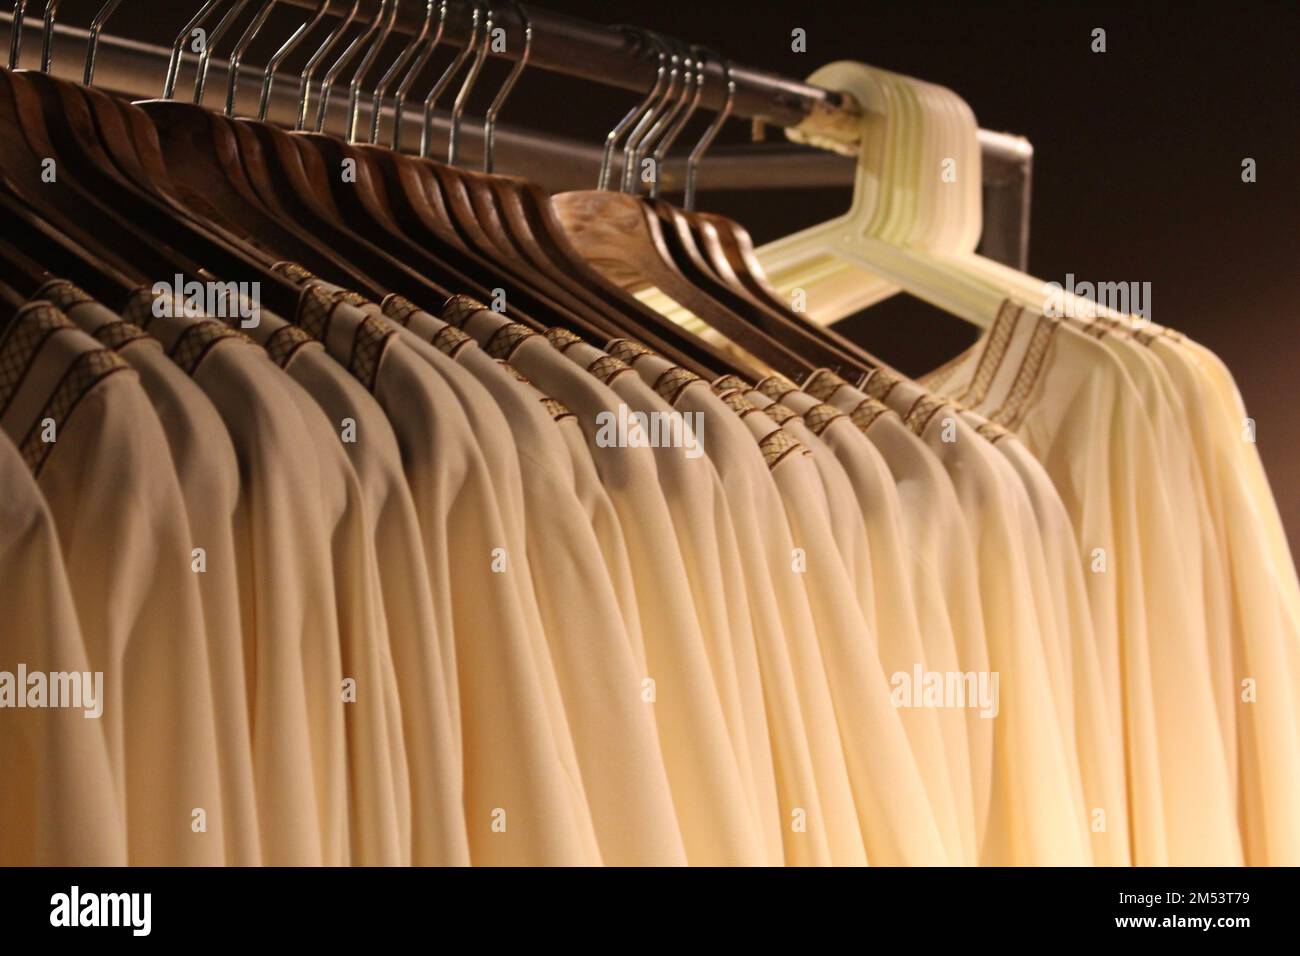 Une rangée de vêtements similaires suspendus sur un rack - concept de performance Banque D'Images